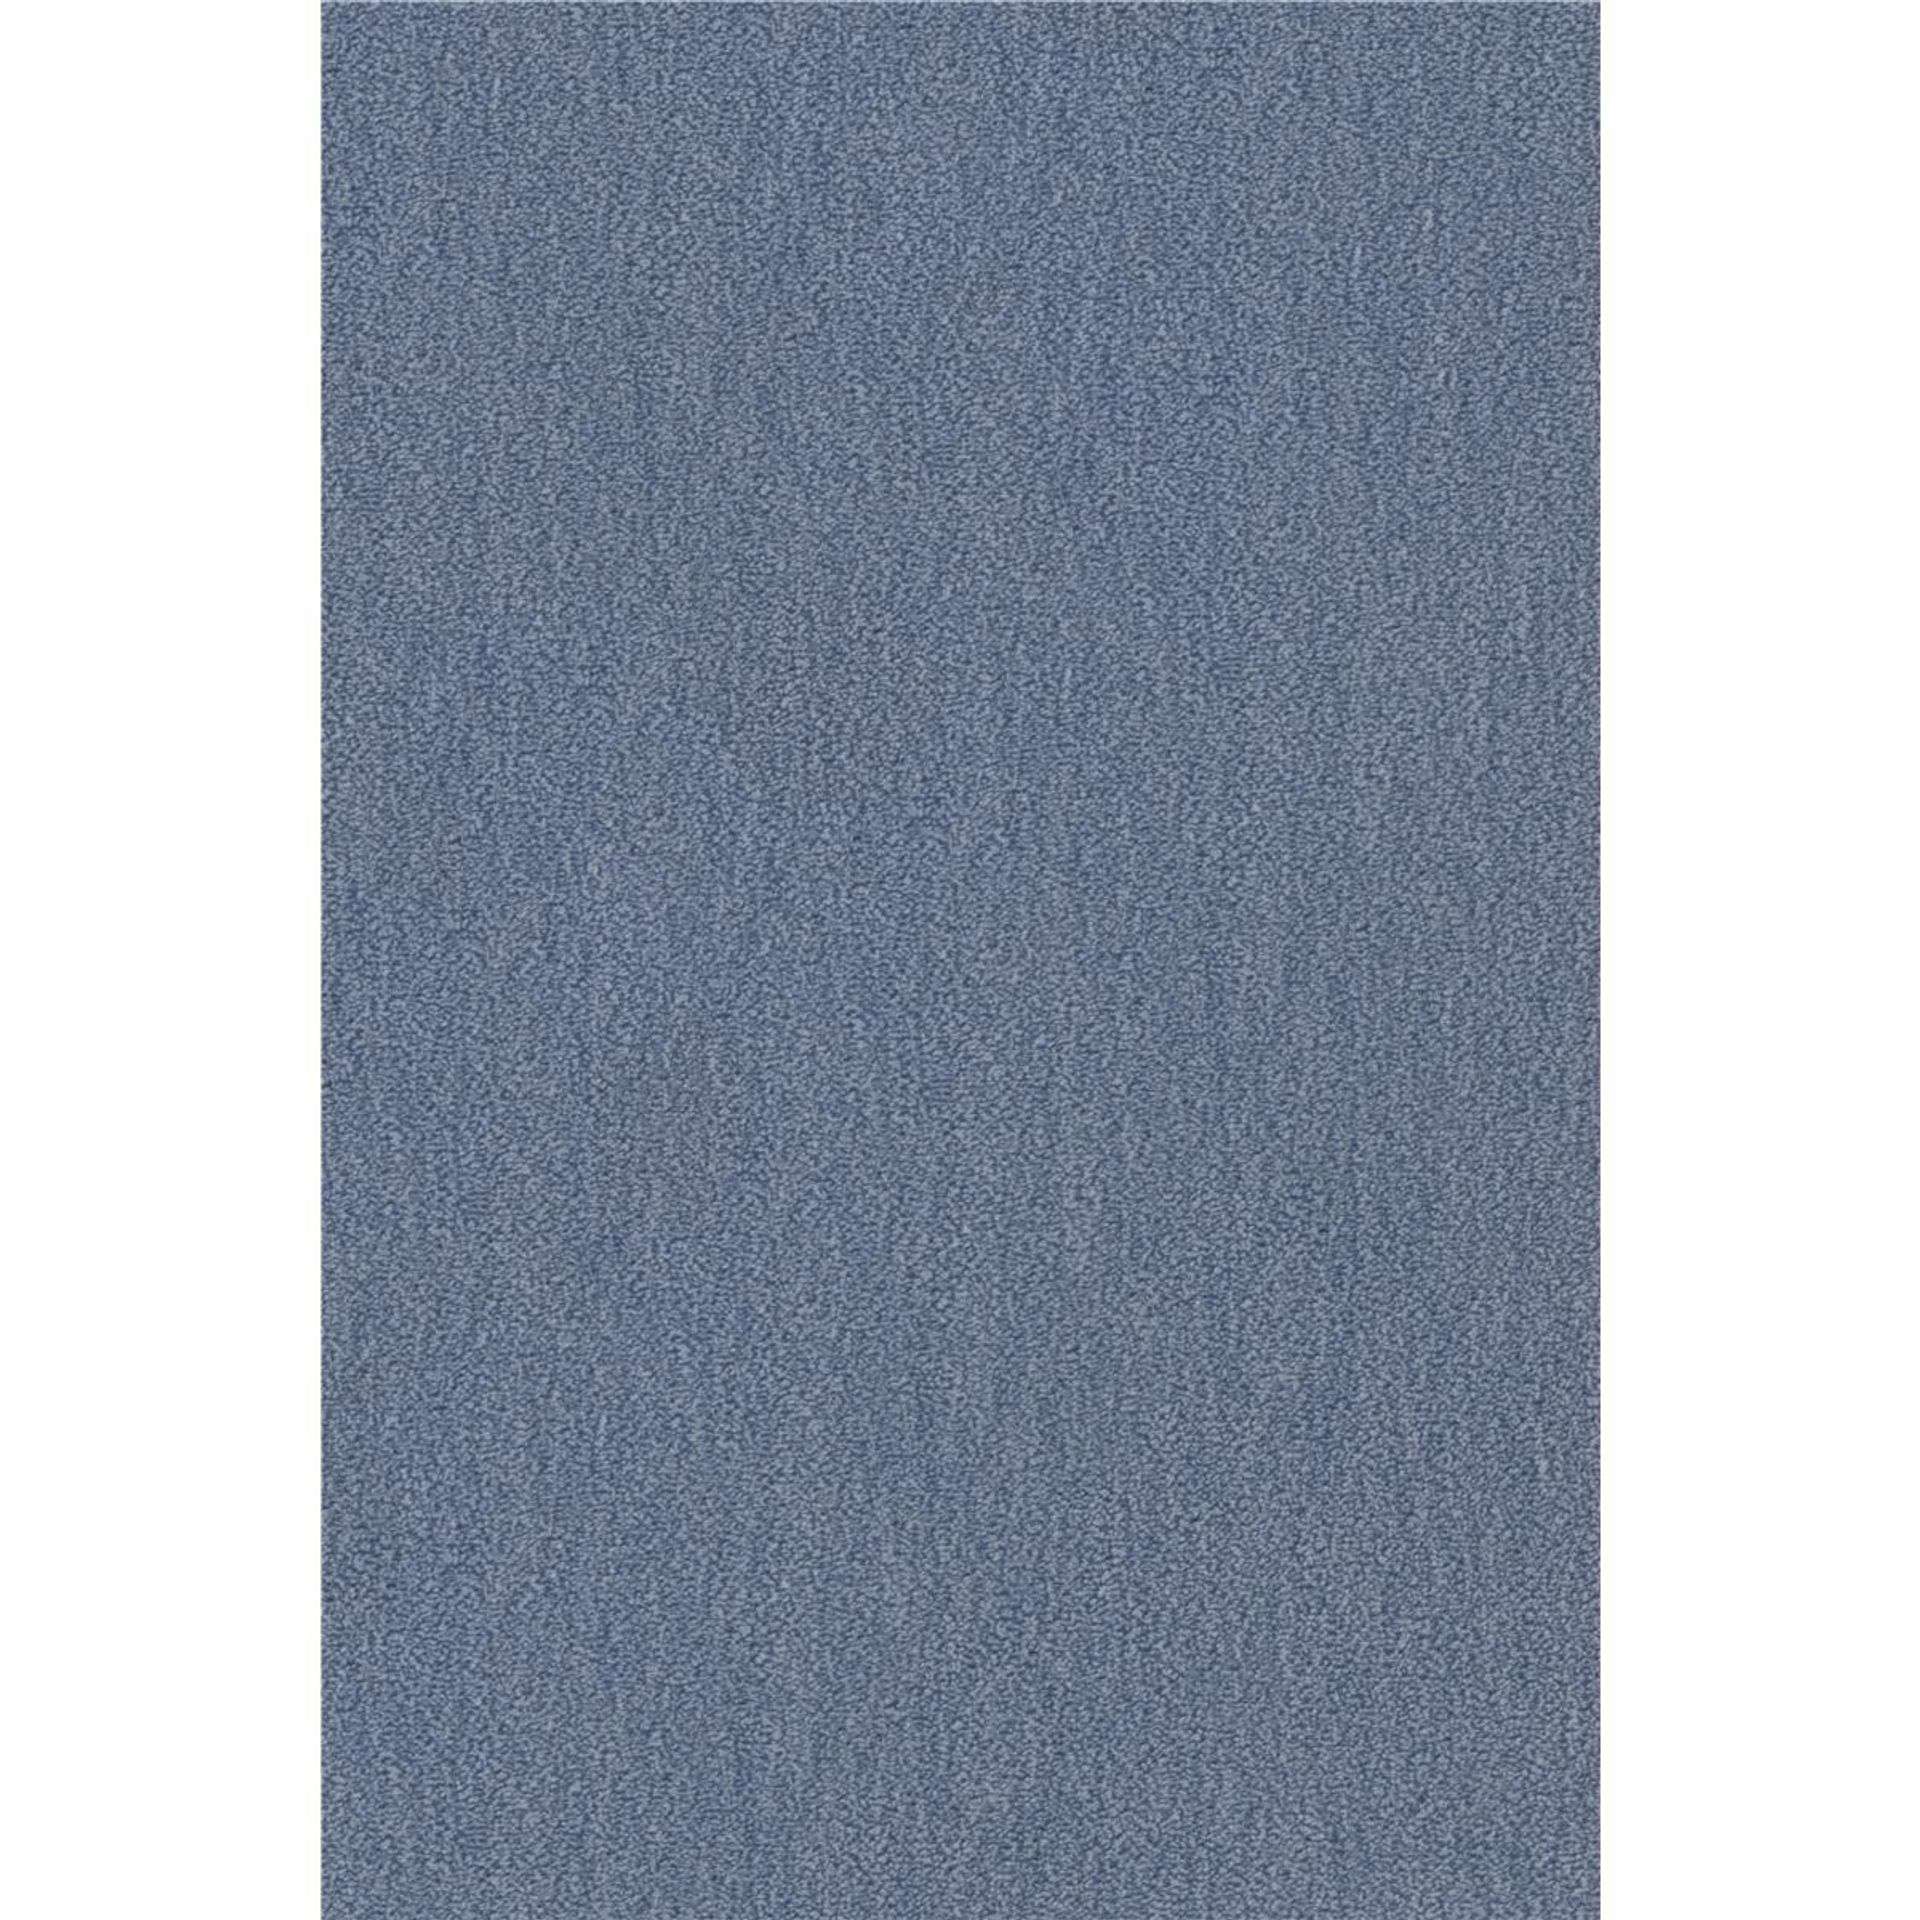 Teppichboden Vorwerk Passion 1002 NUTRIA MELANGE Velours Blau 3R13 - Rollenbreite 500 cm